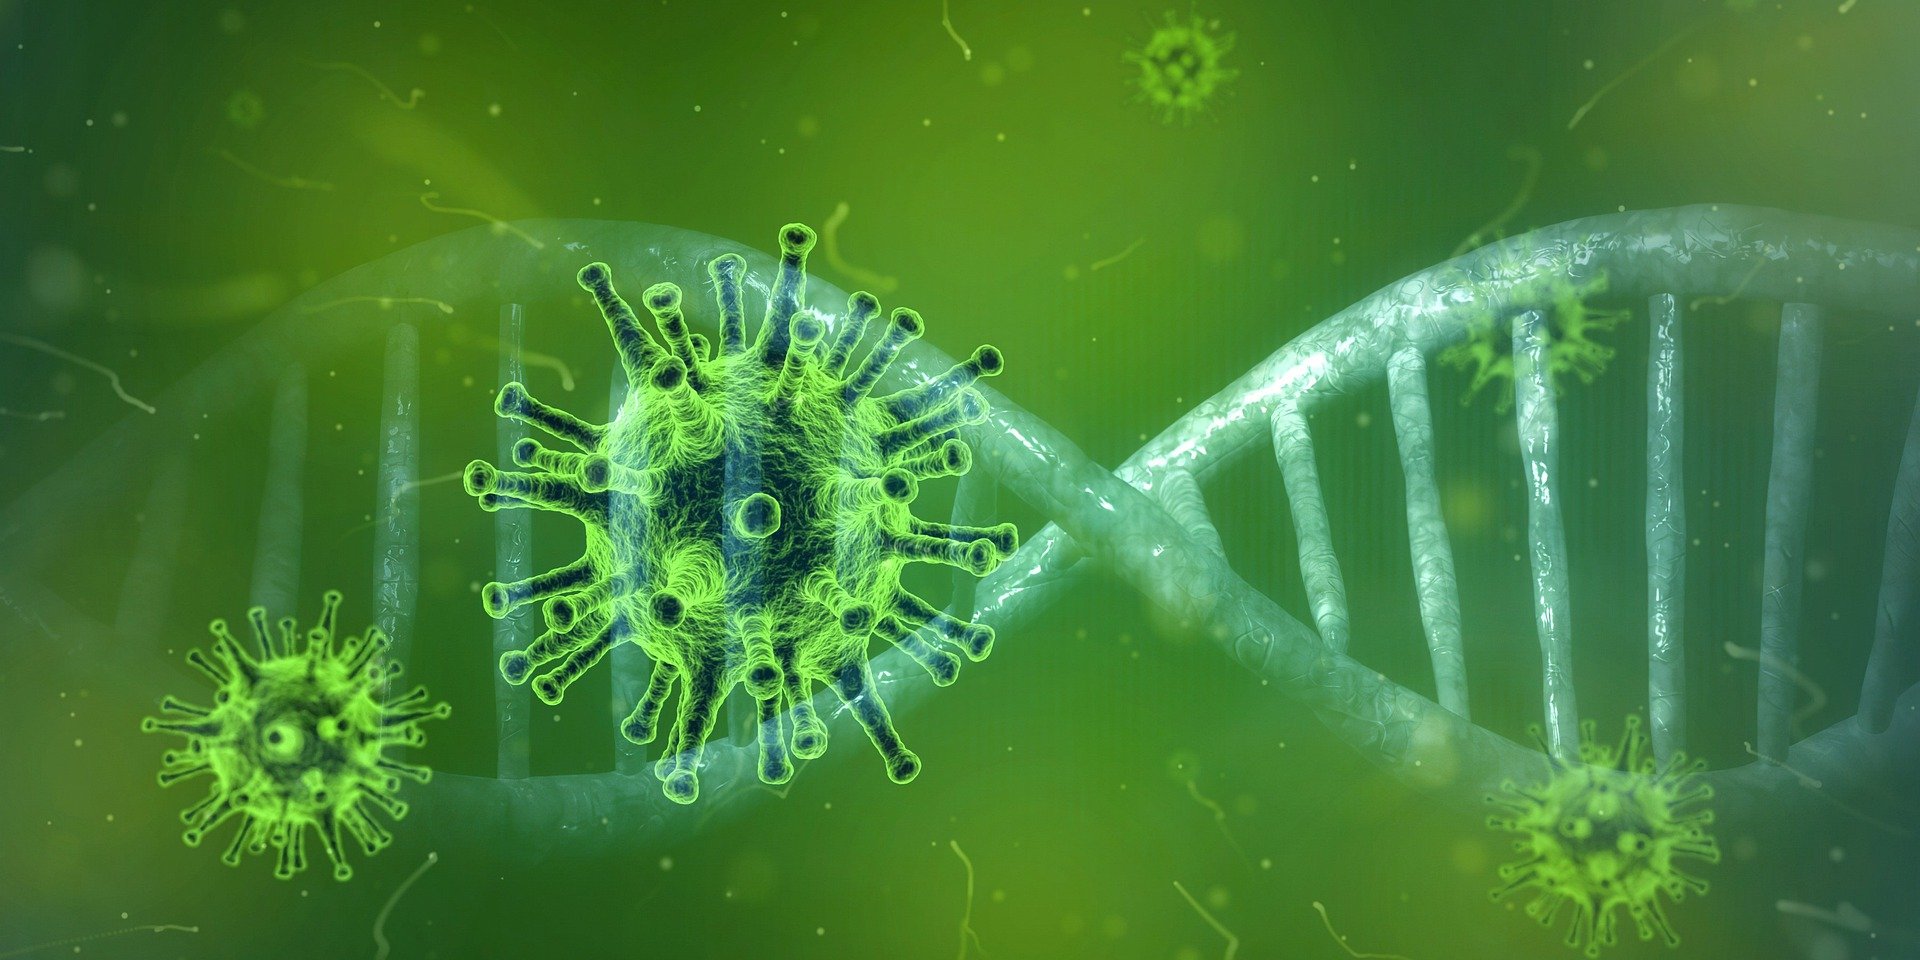 Gruene Viren neben einem DNA-Strang mit gruenem Hintergrund